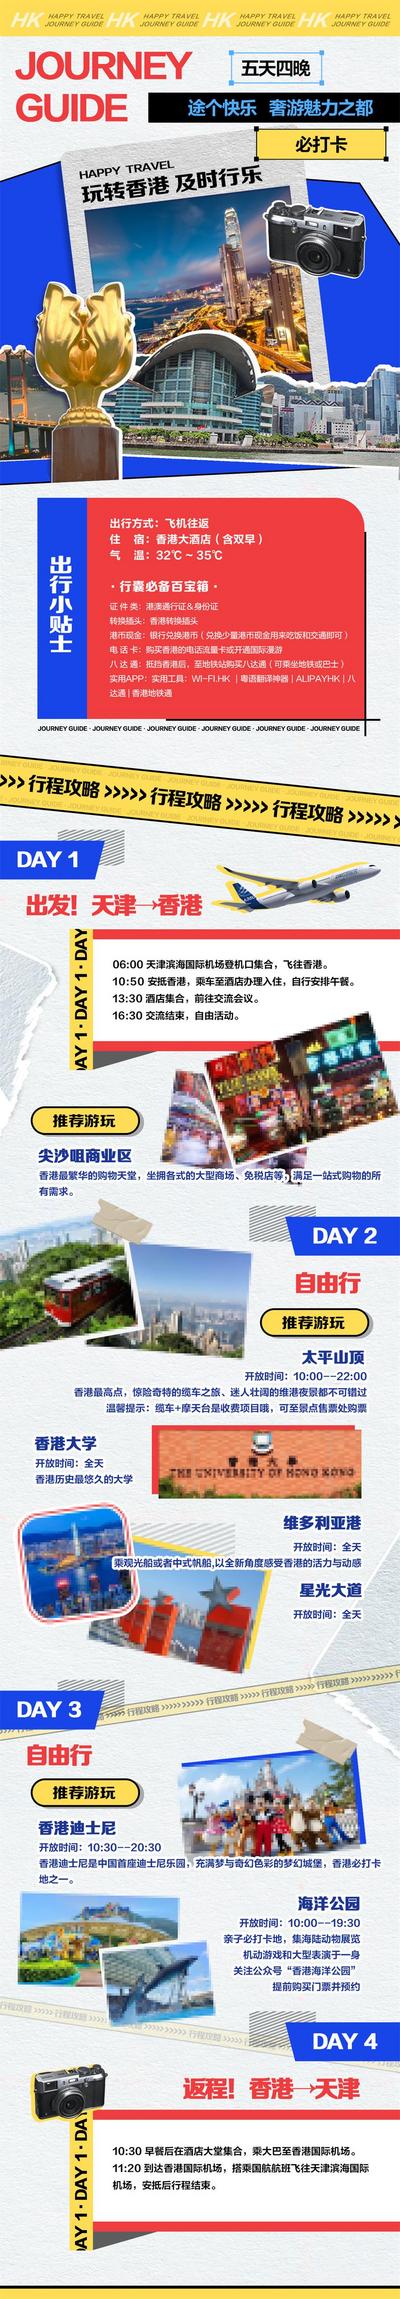 南门网 海报 长图 旅游 香港 攻略 复古 拼贴 推文 公众号 旅行